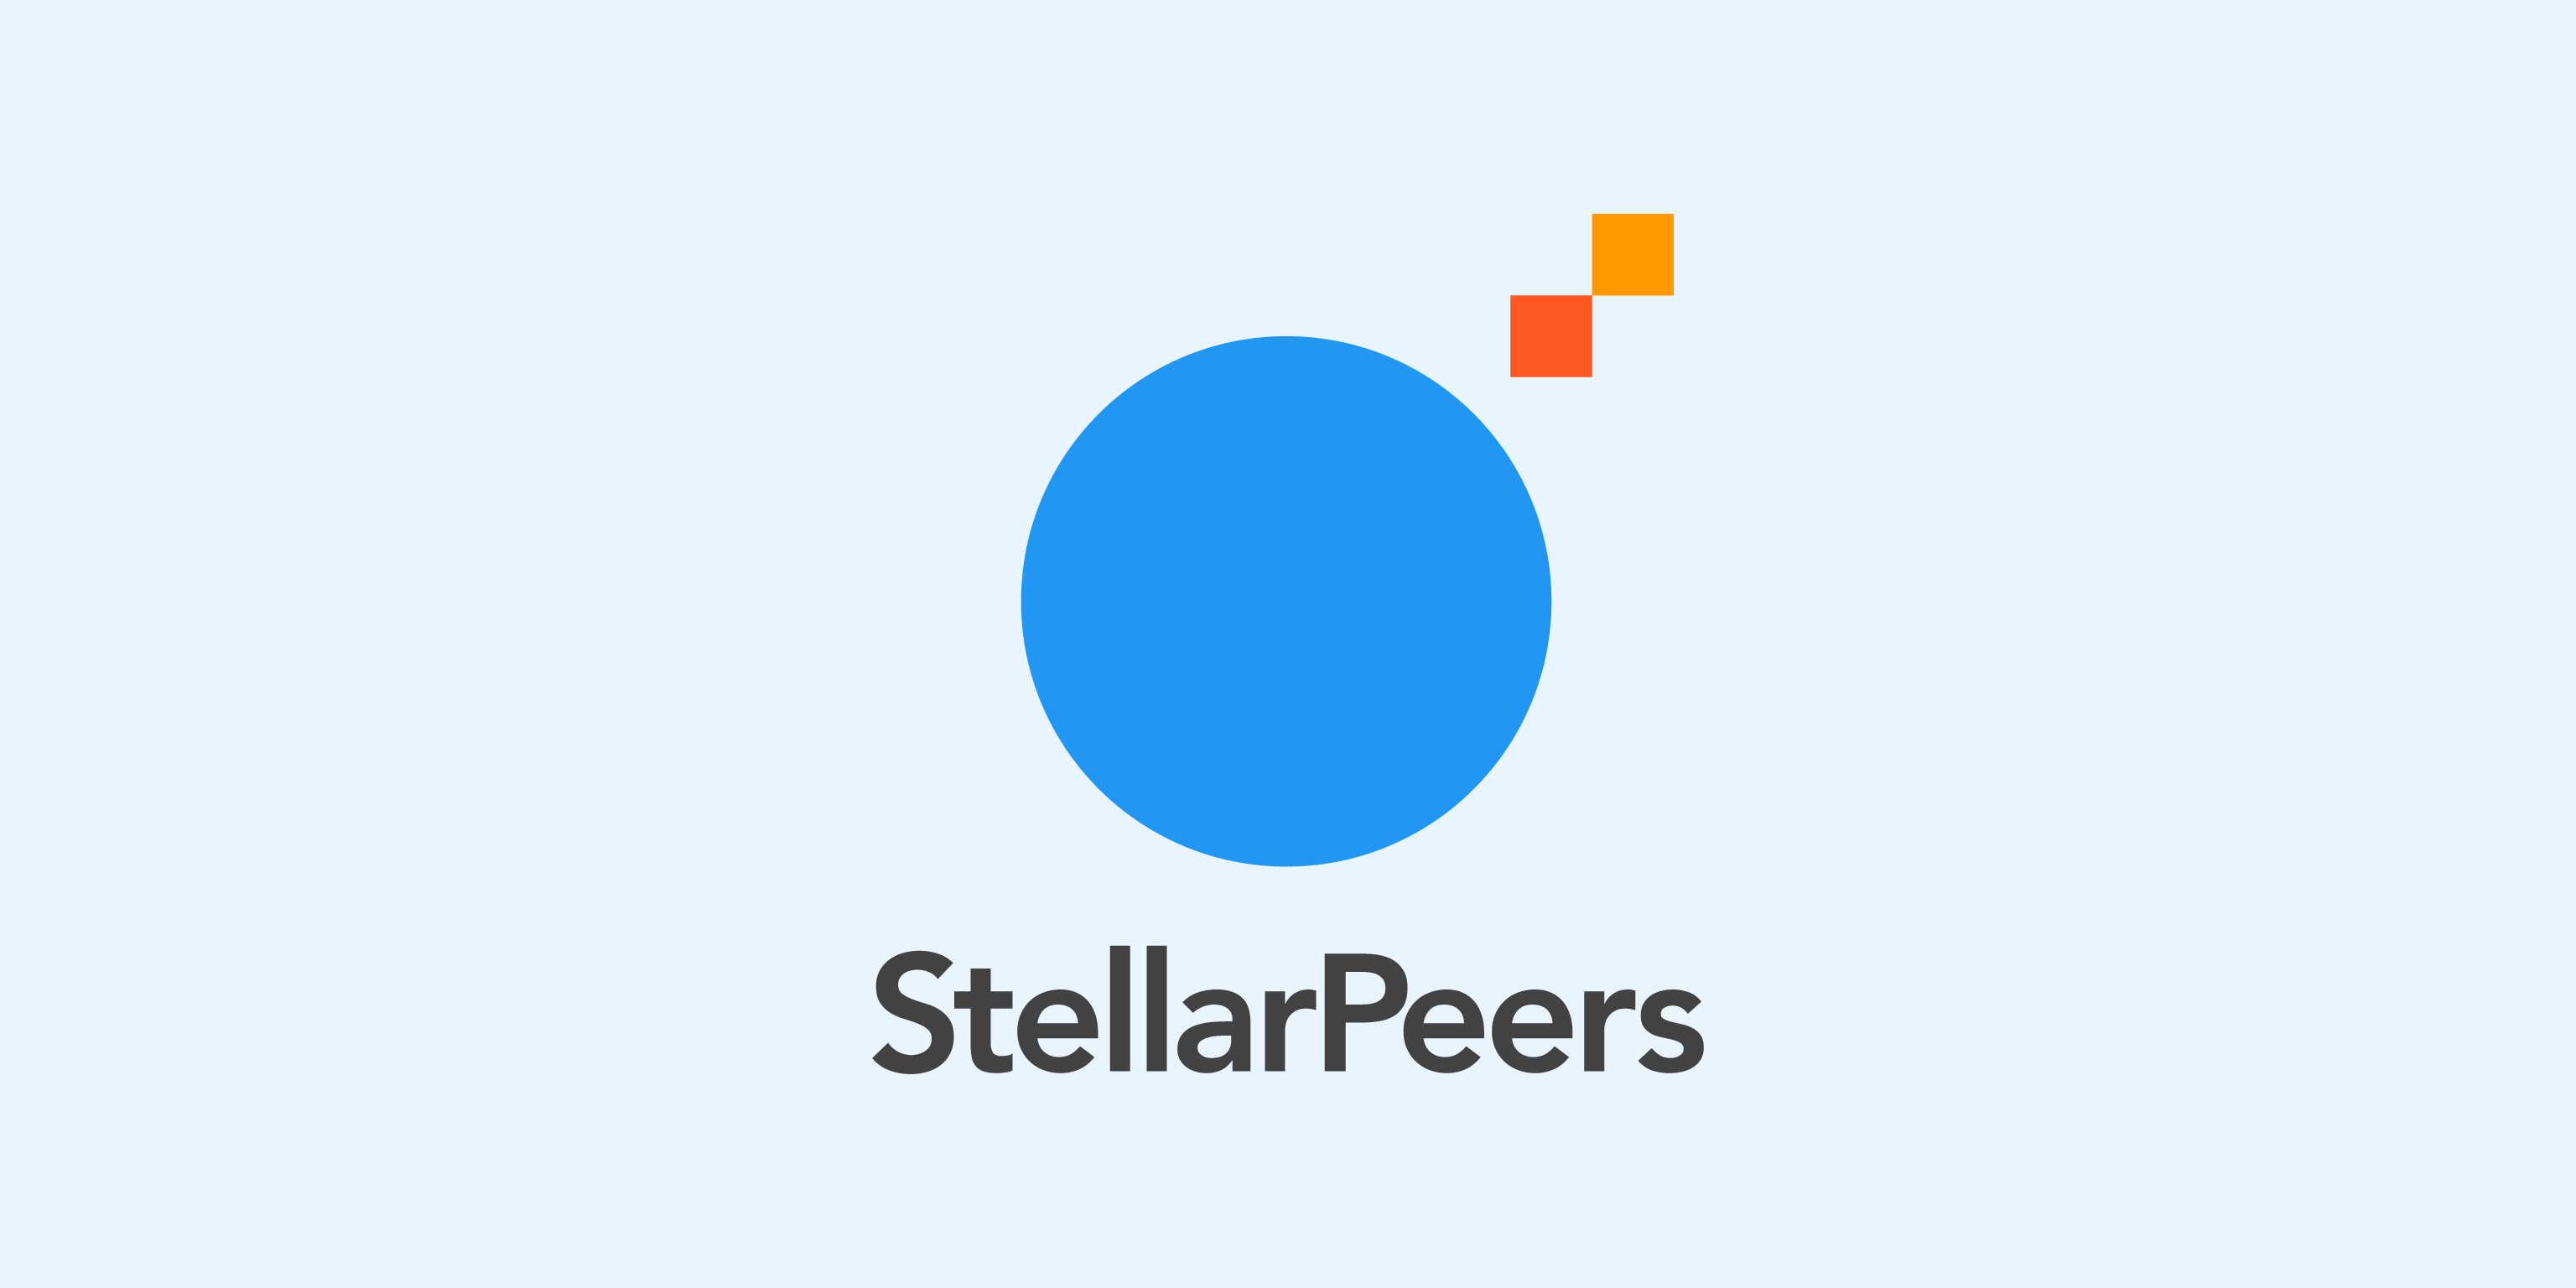 StellarPeers